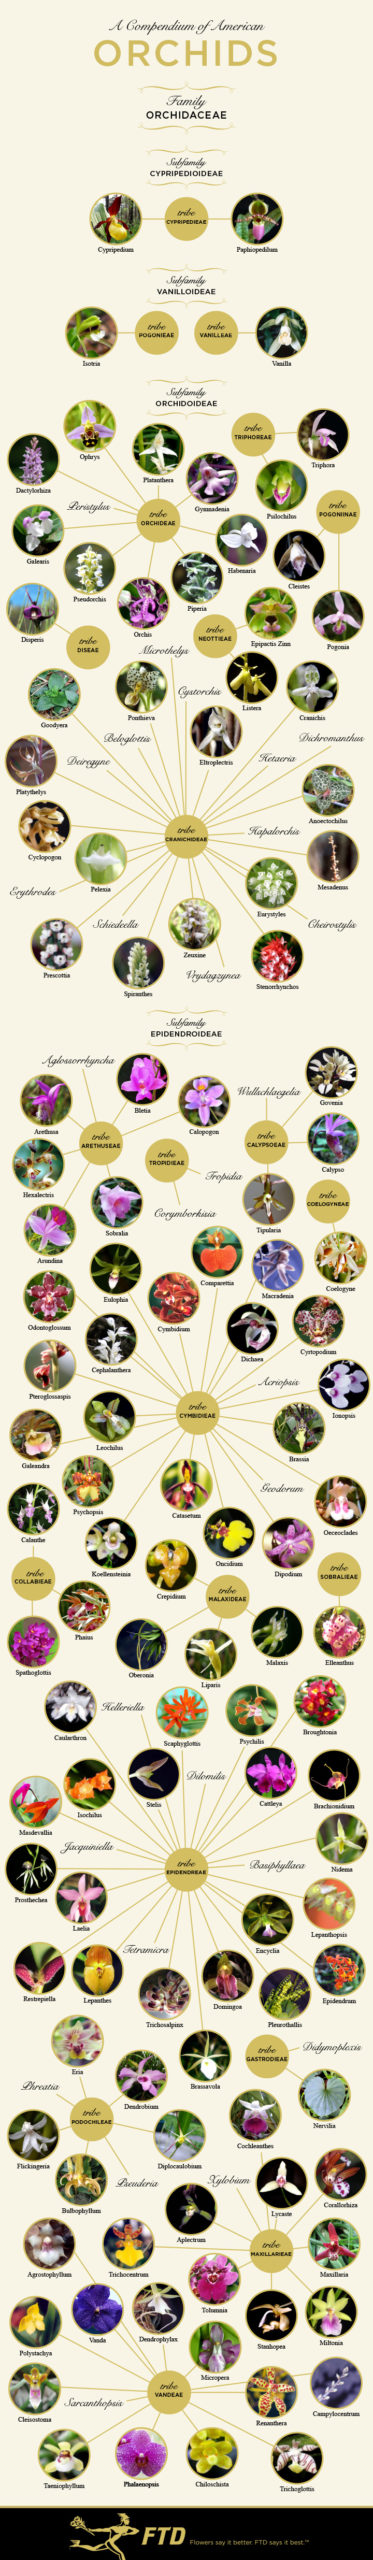 Cuadro de identificación de orquídeas por tipo de orquídea